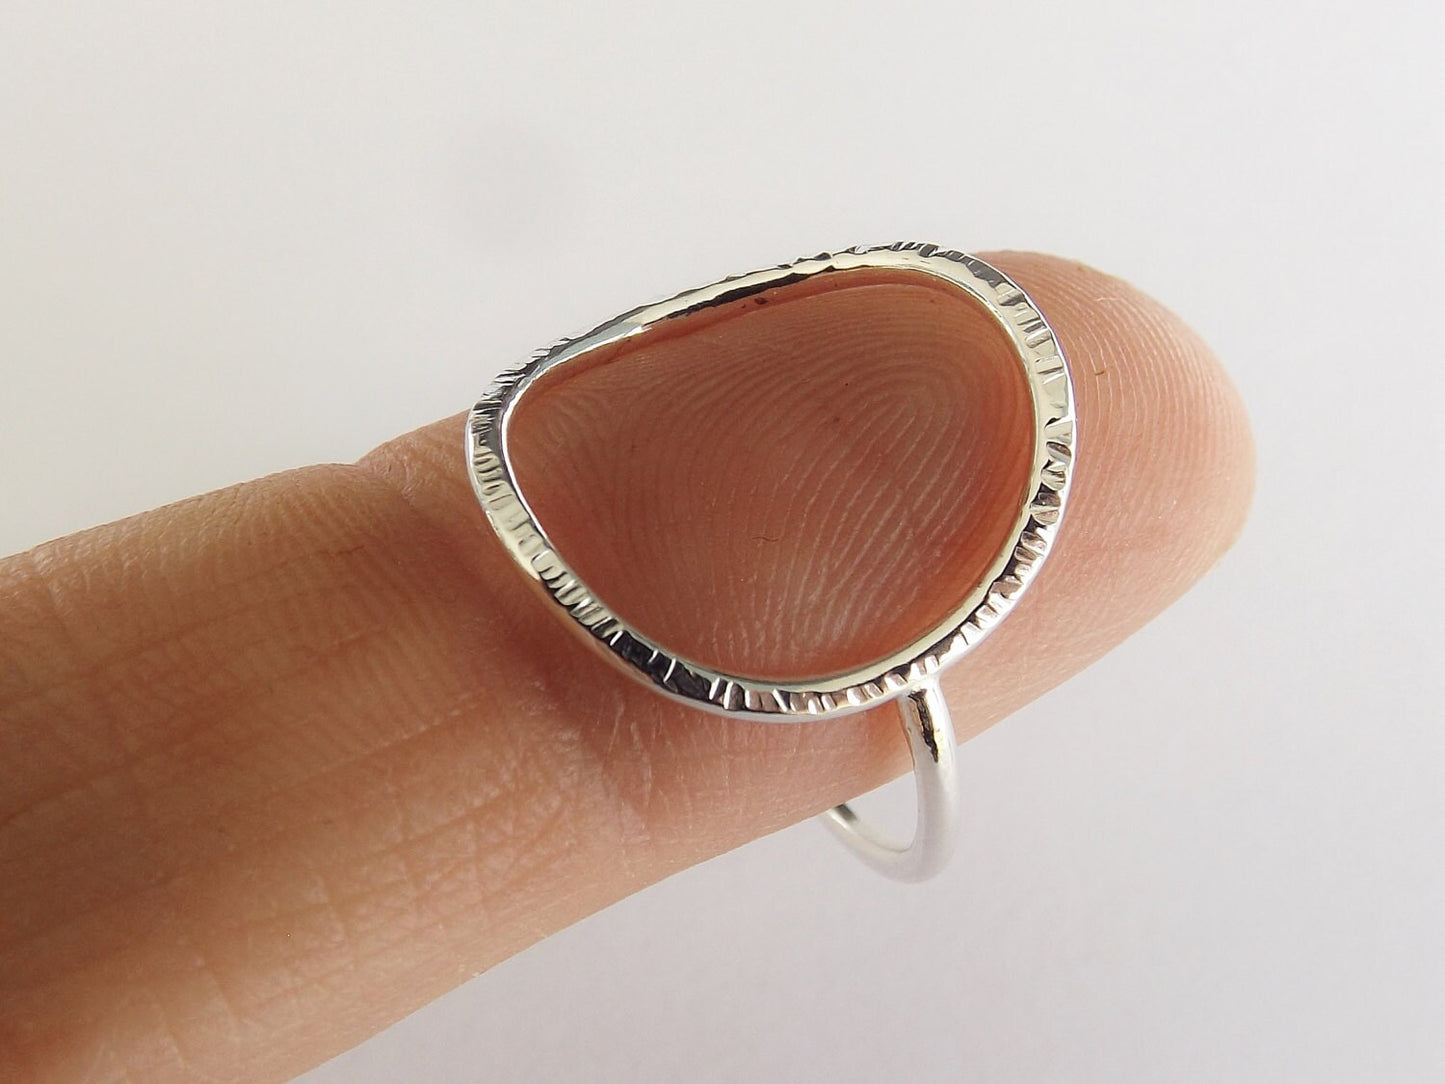 Large Circle Ring,Stacking Rings,Eternity Rings,Silver/Gold Circle Rings,Simple Modern Rings,Karma Circle Ring,Minimalist Jewelry,Karma Ring